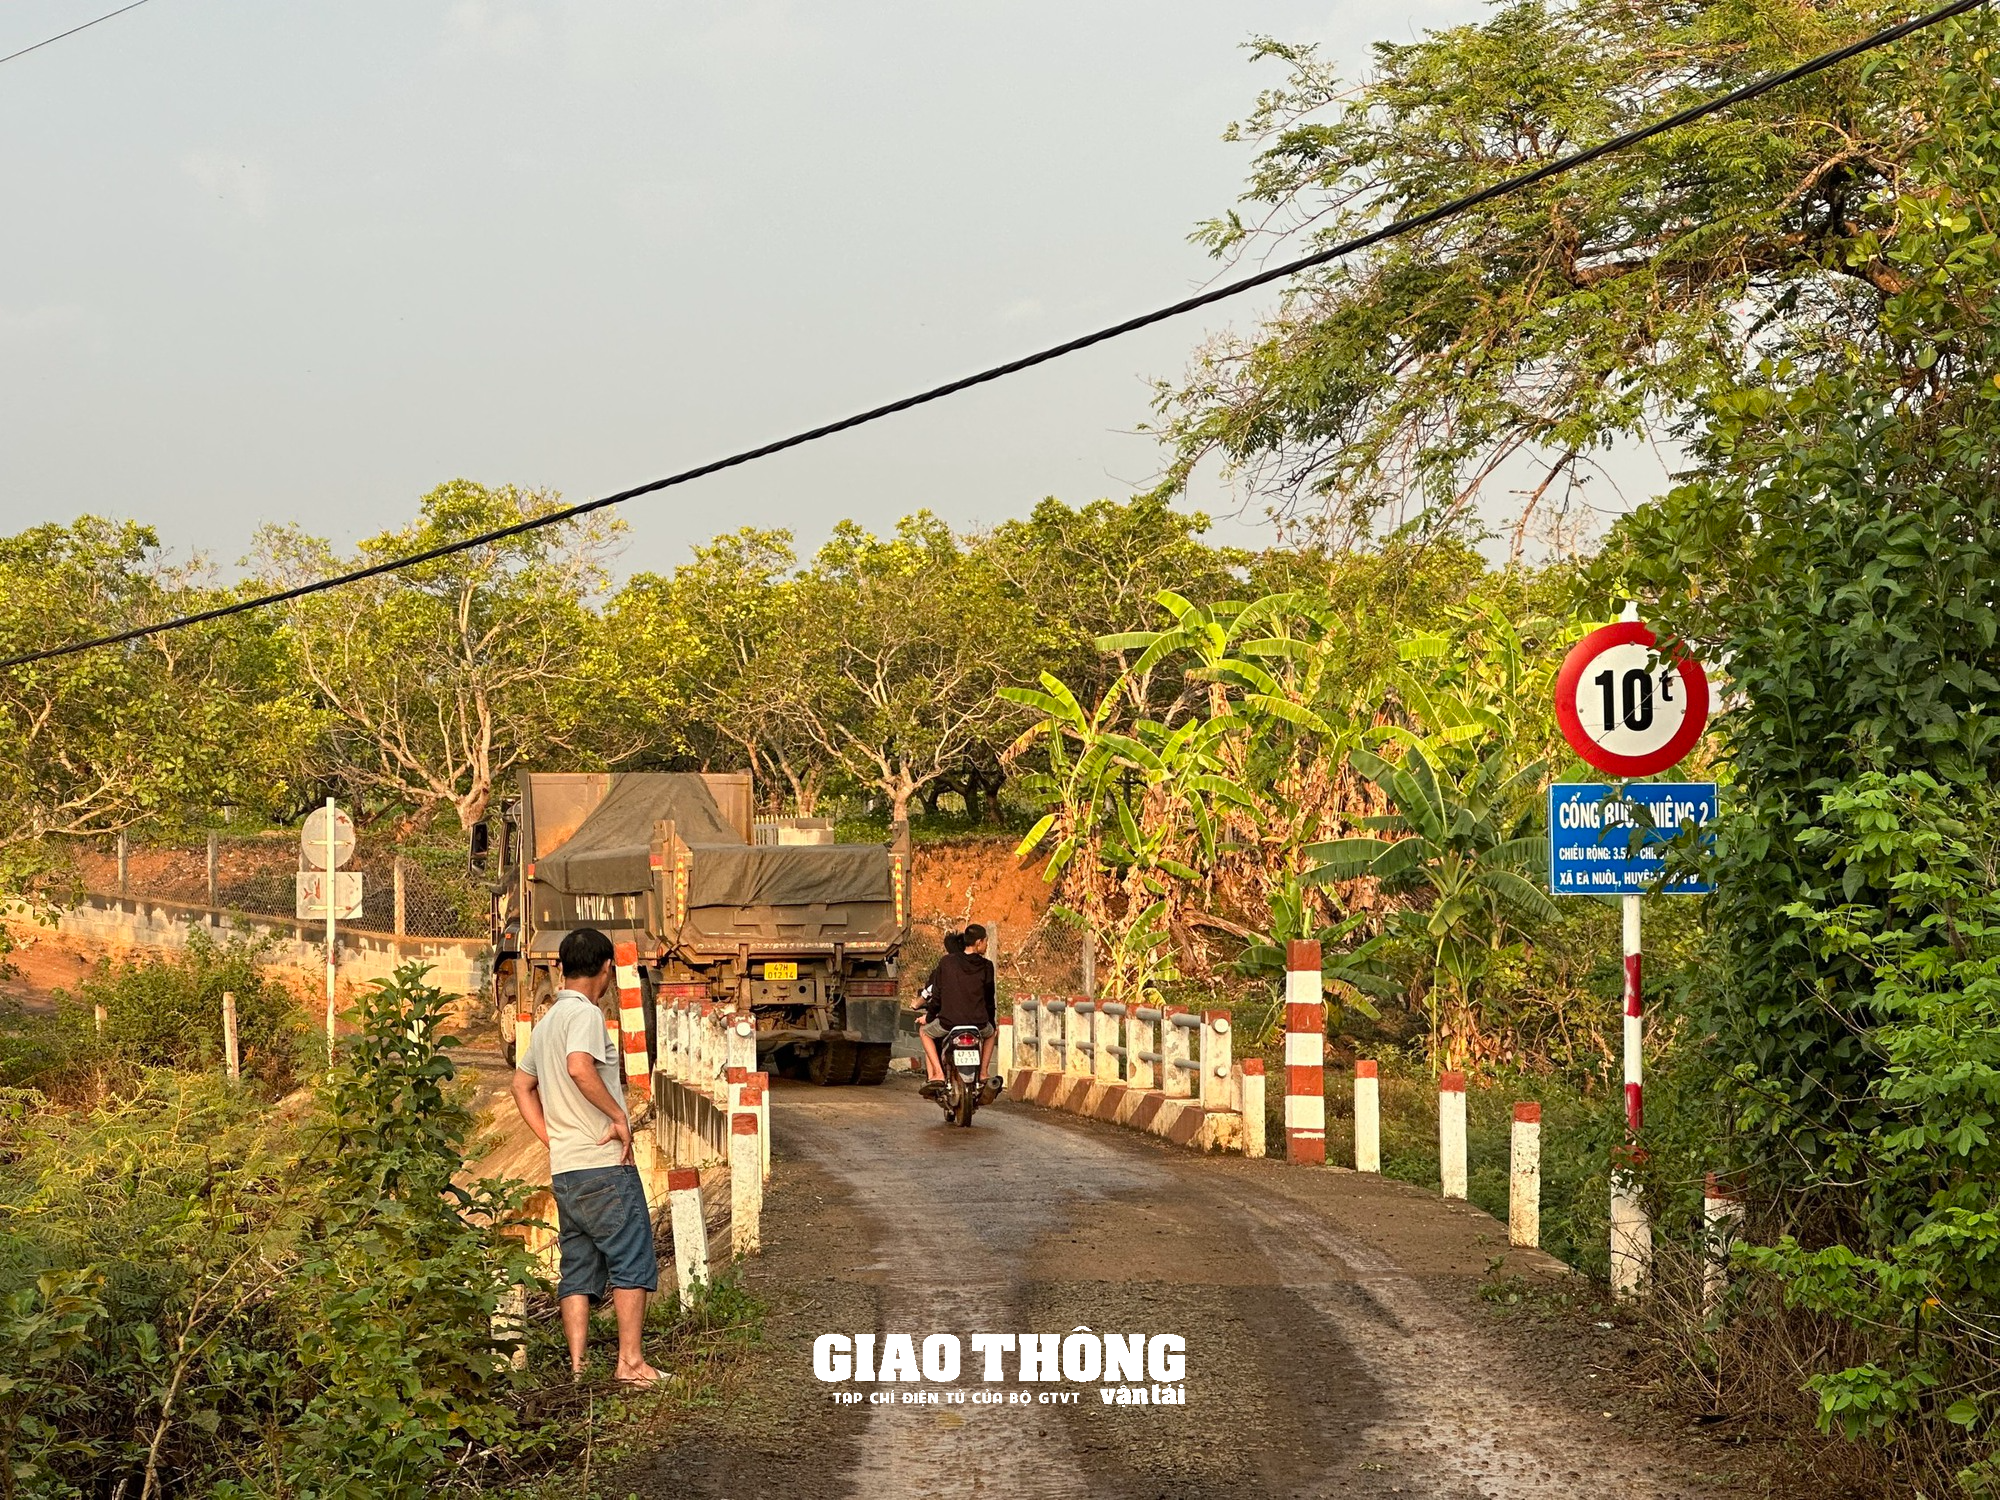 Vụ dàn xe ben chở đá rầm rập qua cầu 10 tấn ở Đắk Lắk: Biển báo giao thông bị xịt sơn đen - Ảnh 2.